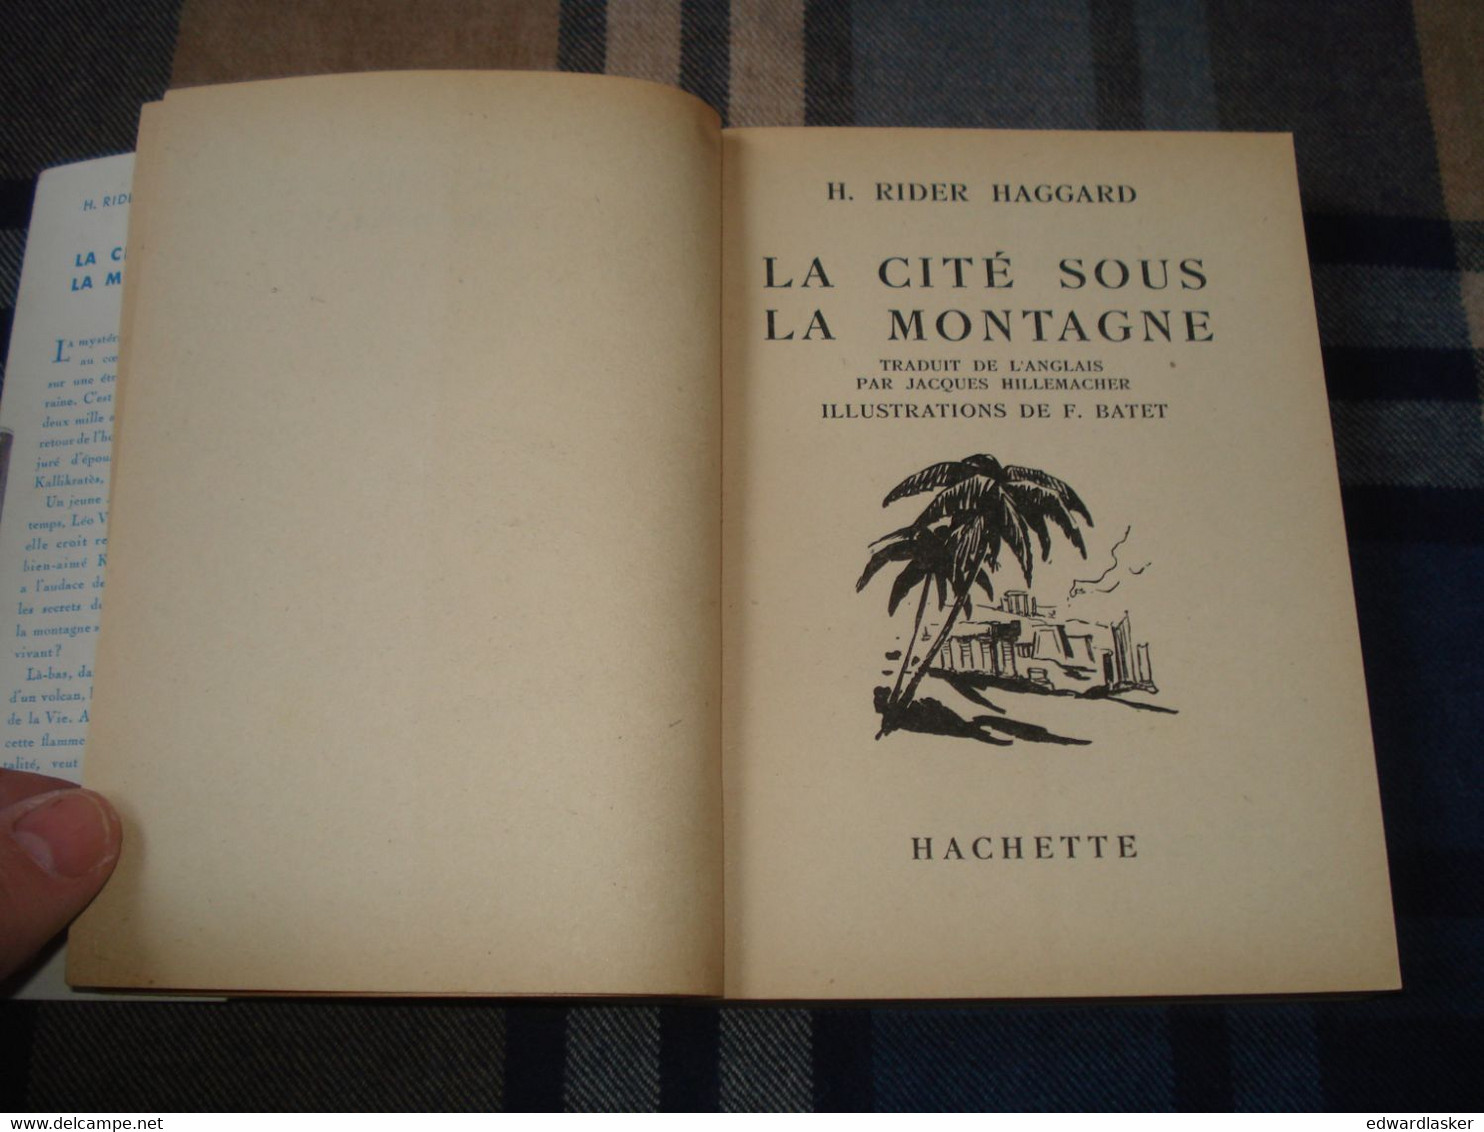 BIBLIOTHEQUE De La JEUNESSE : La Cité Sous La Montagne (She) /H. Rider Haggard - Jaquette 1952 - Bibliothèque De La Jeunesse